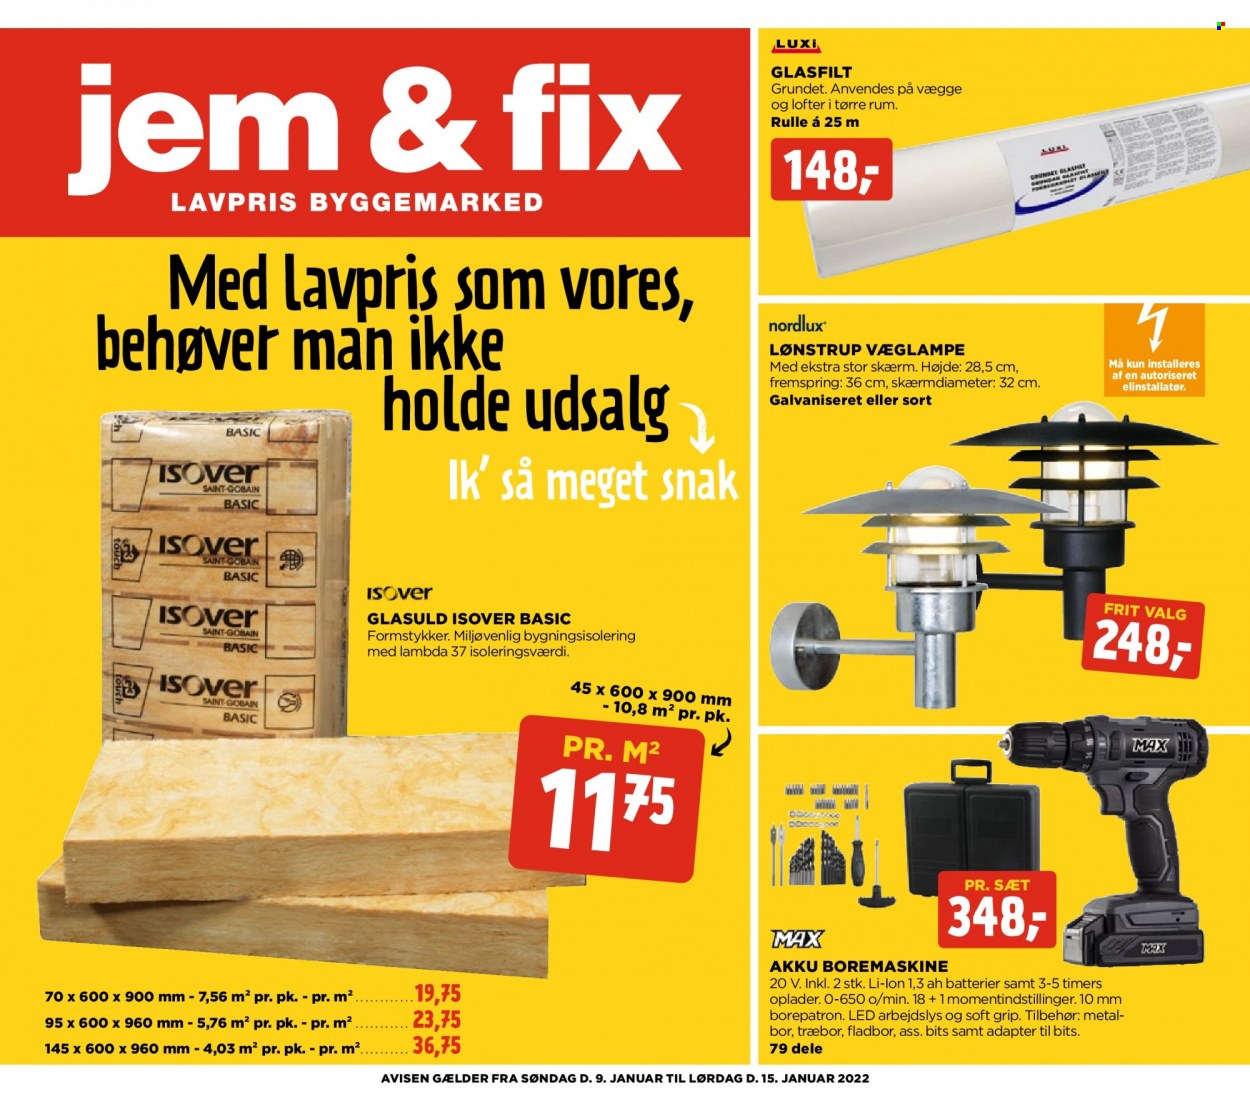 Jem & Fix tilbud  - 09.01.2022 - 15.01.2022 - tilbudsprodukter - akku boremaskine, boremaskine. Side 1.